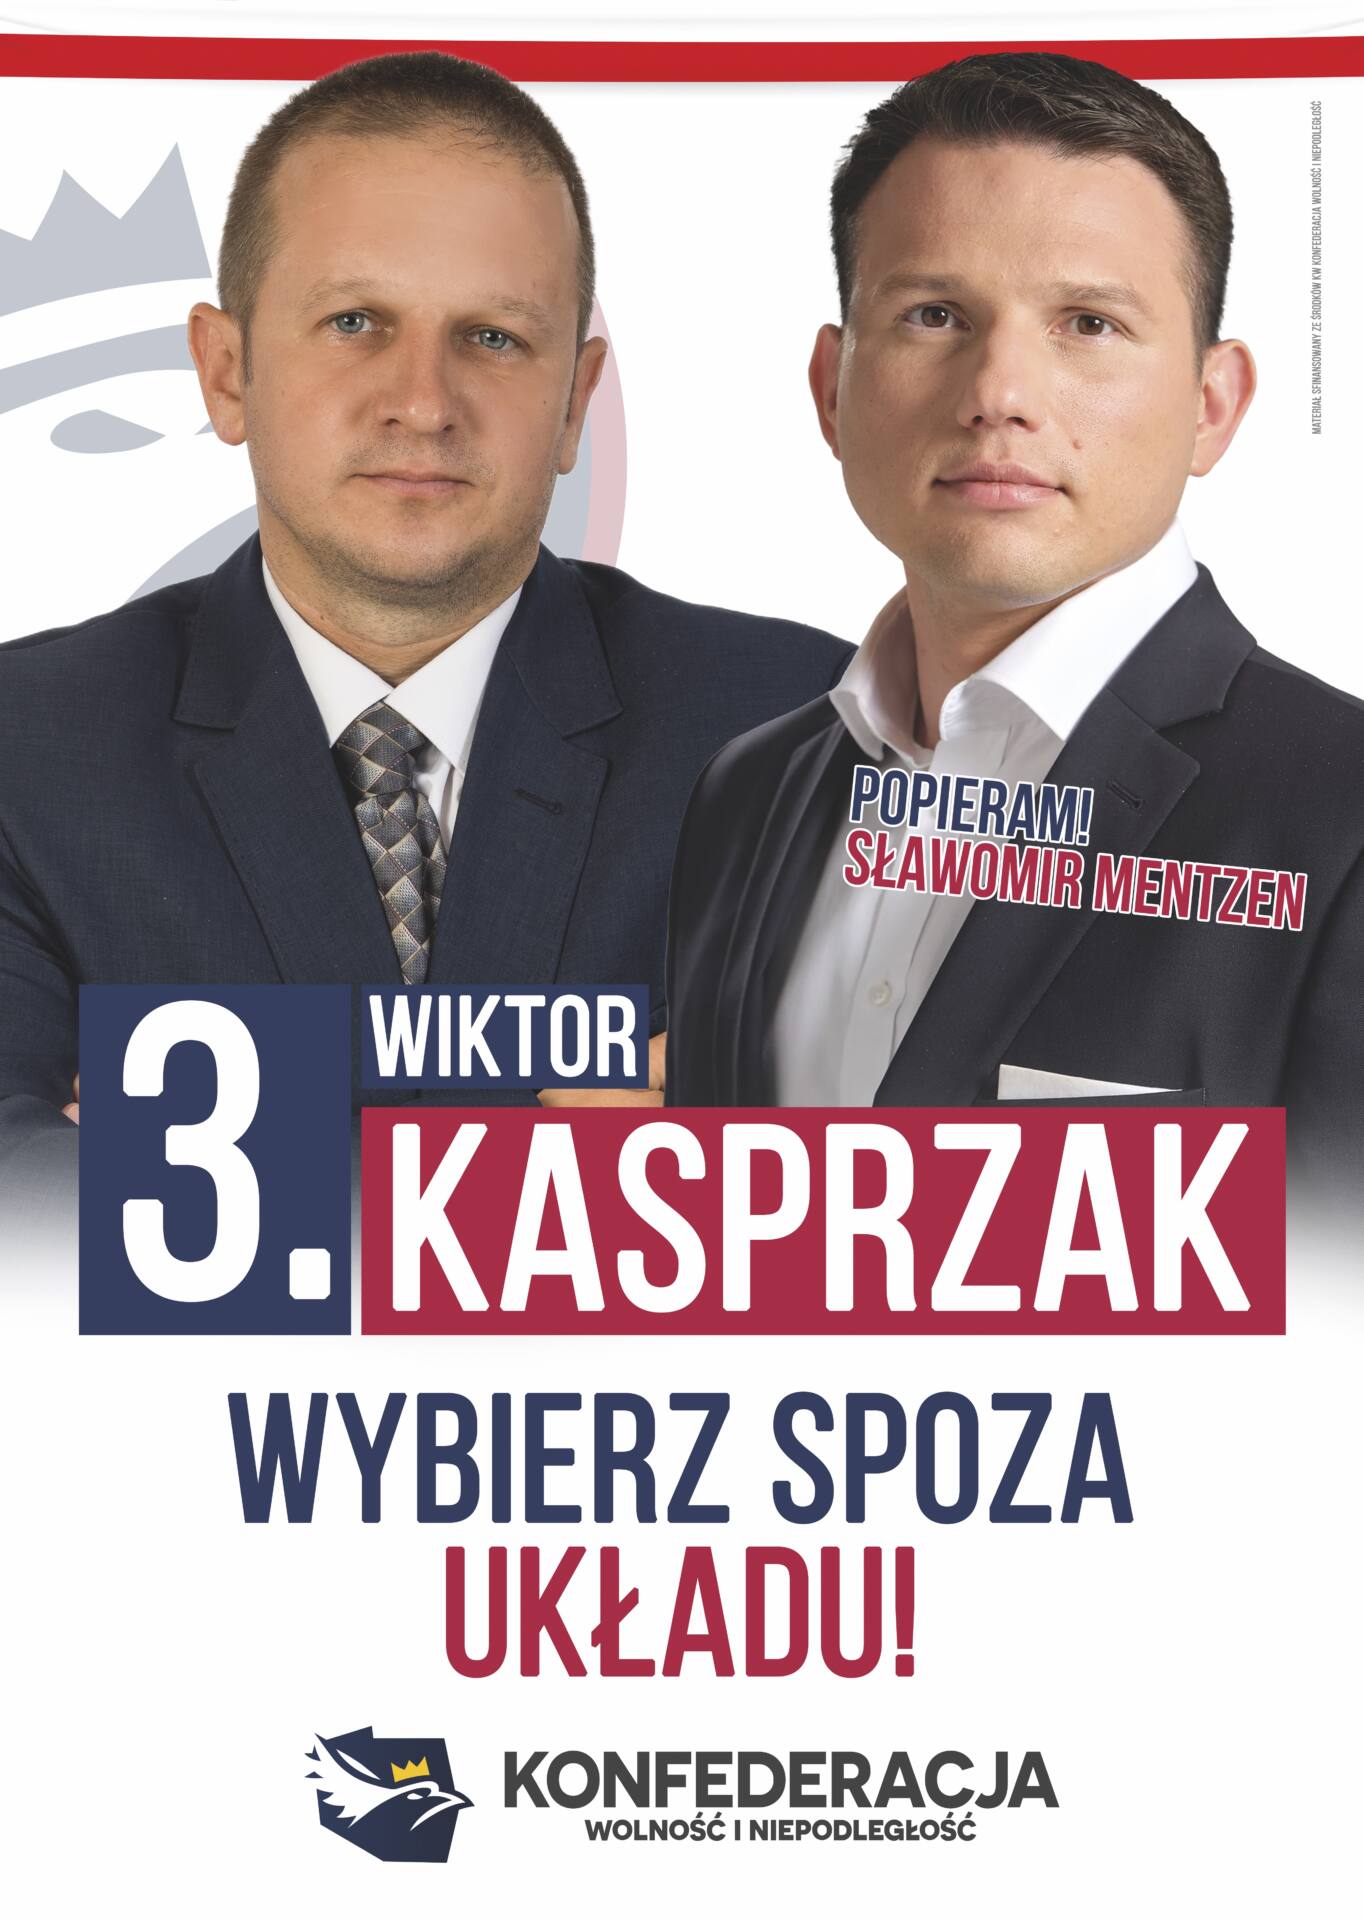 kon plakatkasprzak1 Rozmowa z Wiktorem Kasprzakiem, kandydatem do Sejmu z 3 miejsca listy Konfederacji